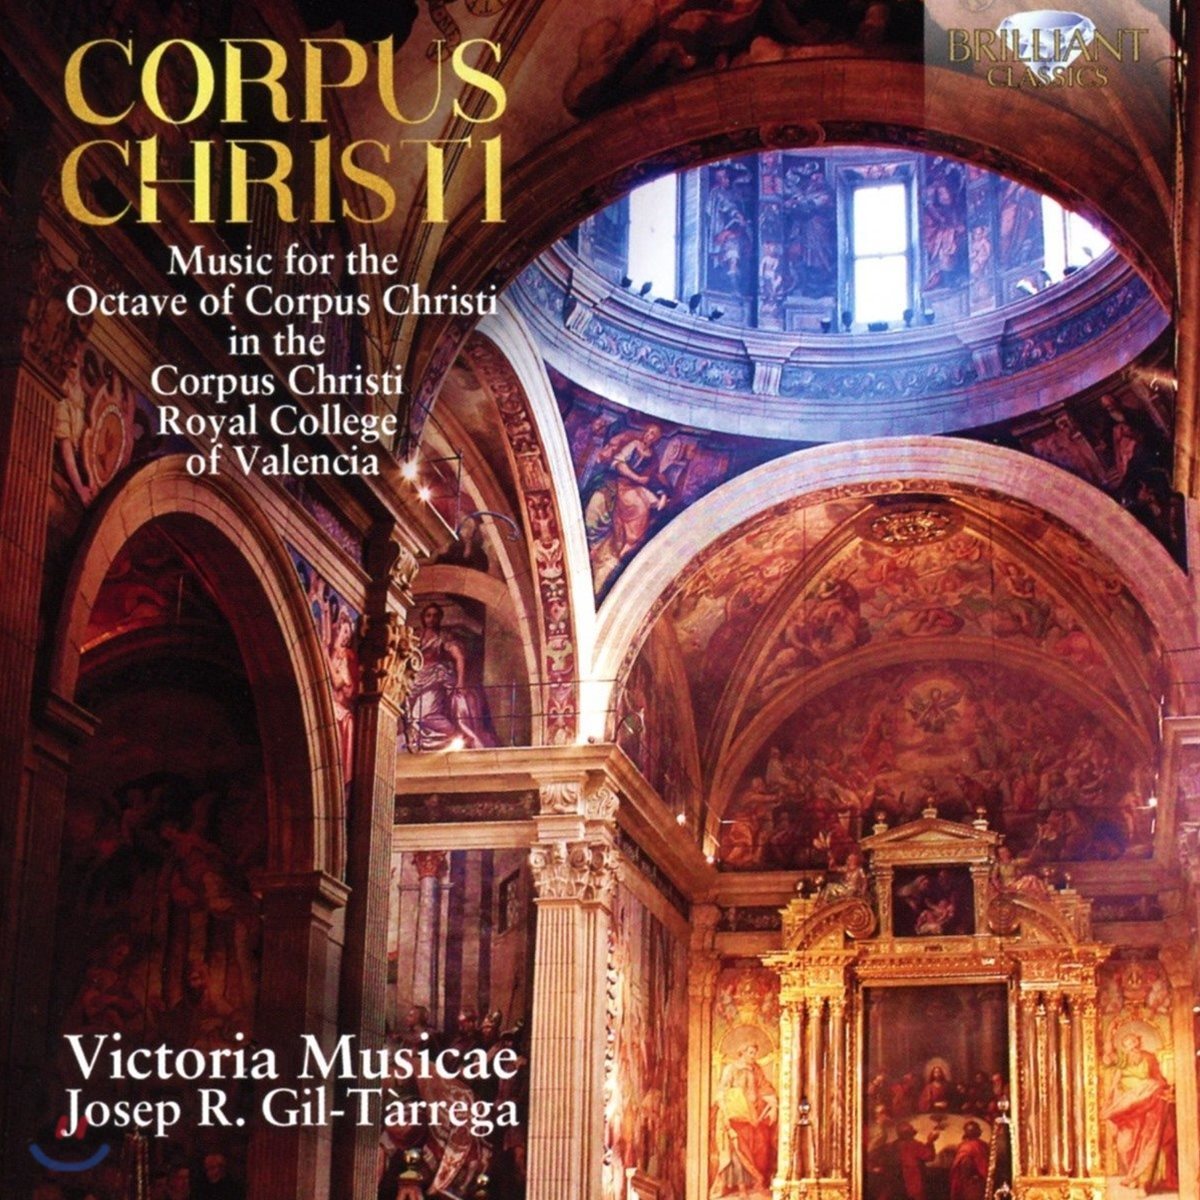 Victoria Musicae 코퍼스 크리스티 - 평성가 모음집 (Corpus Christi)